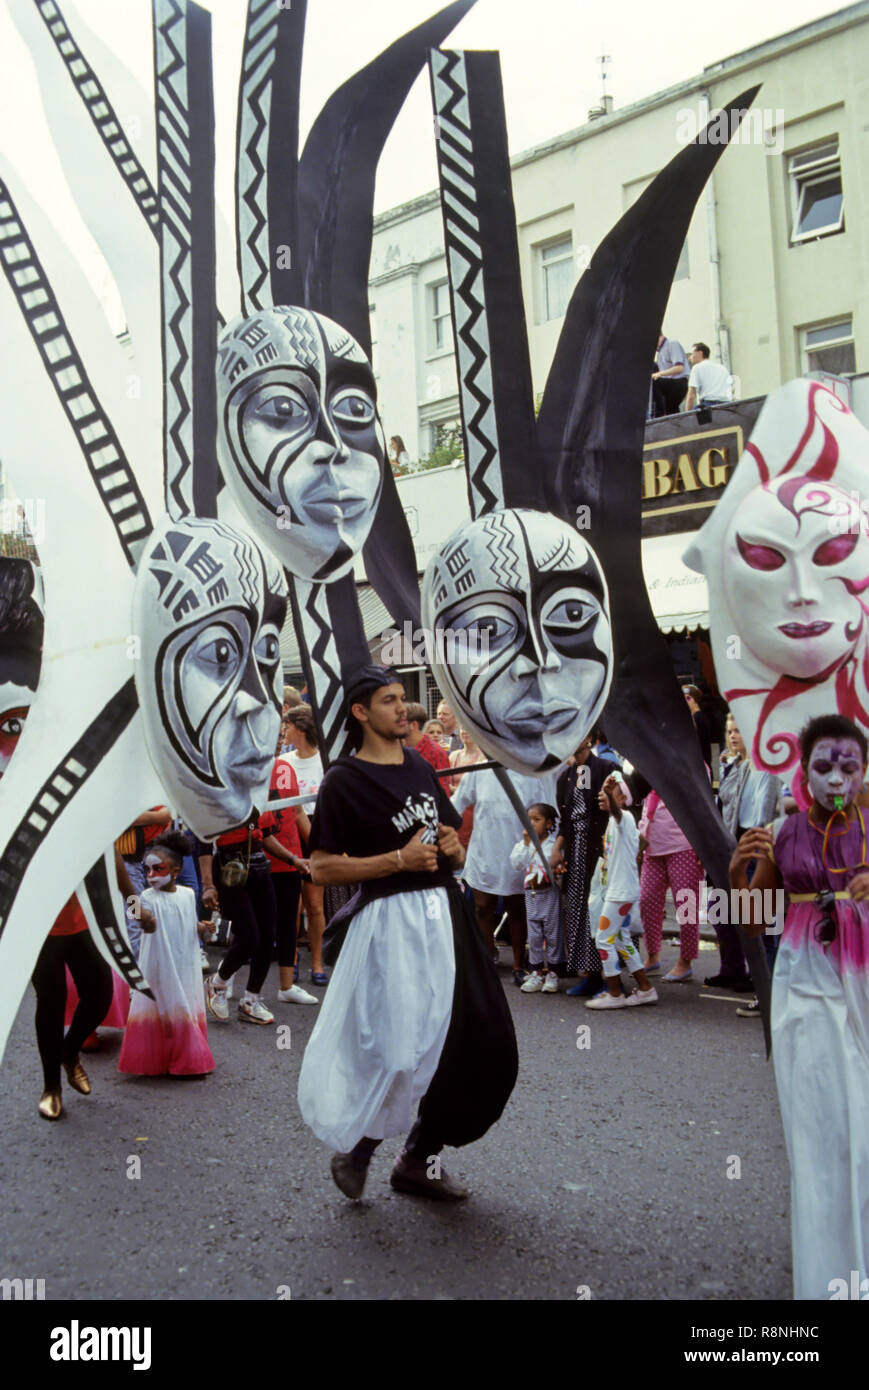 Children Participate in carnival Stock Photo